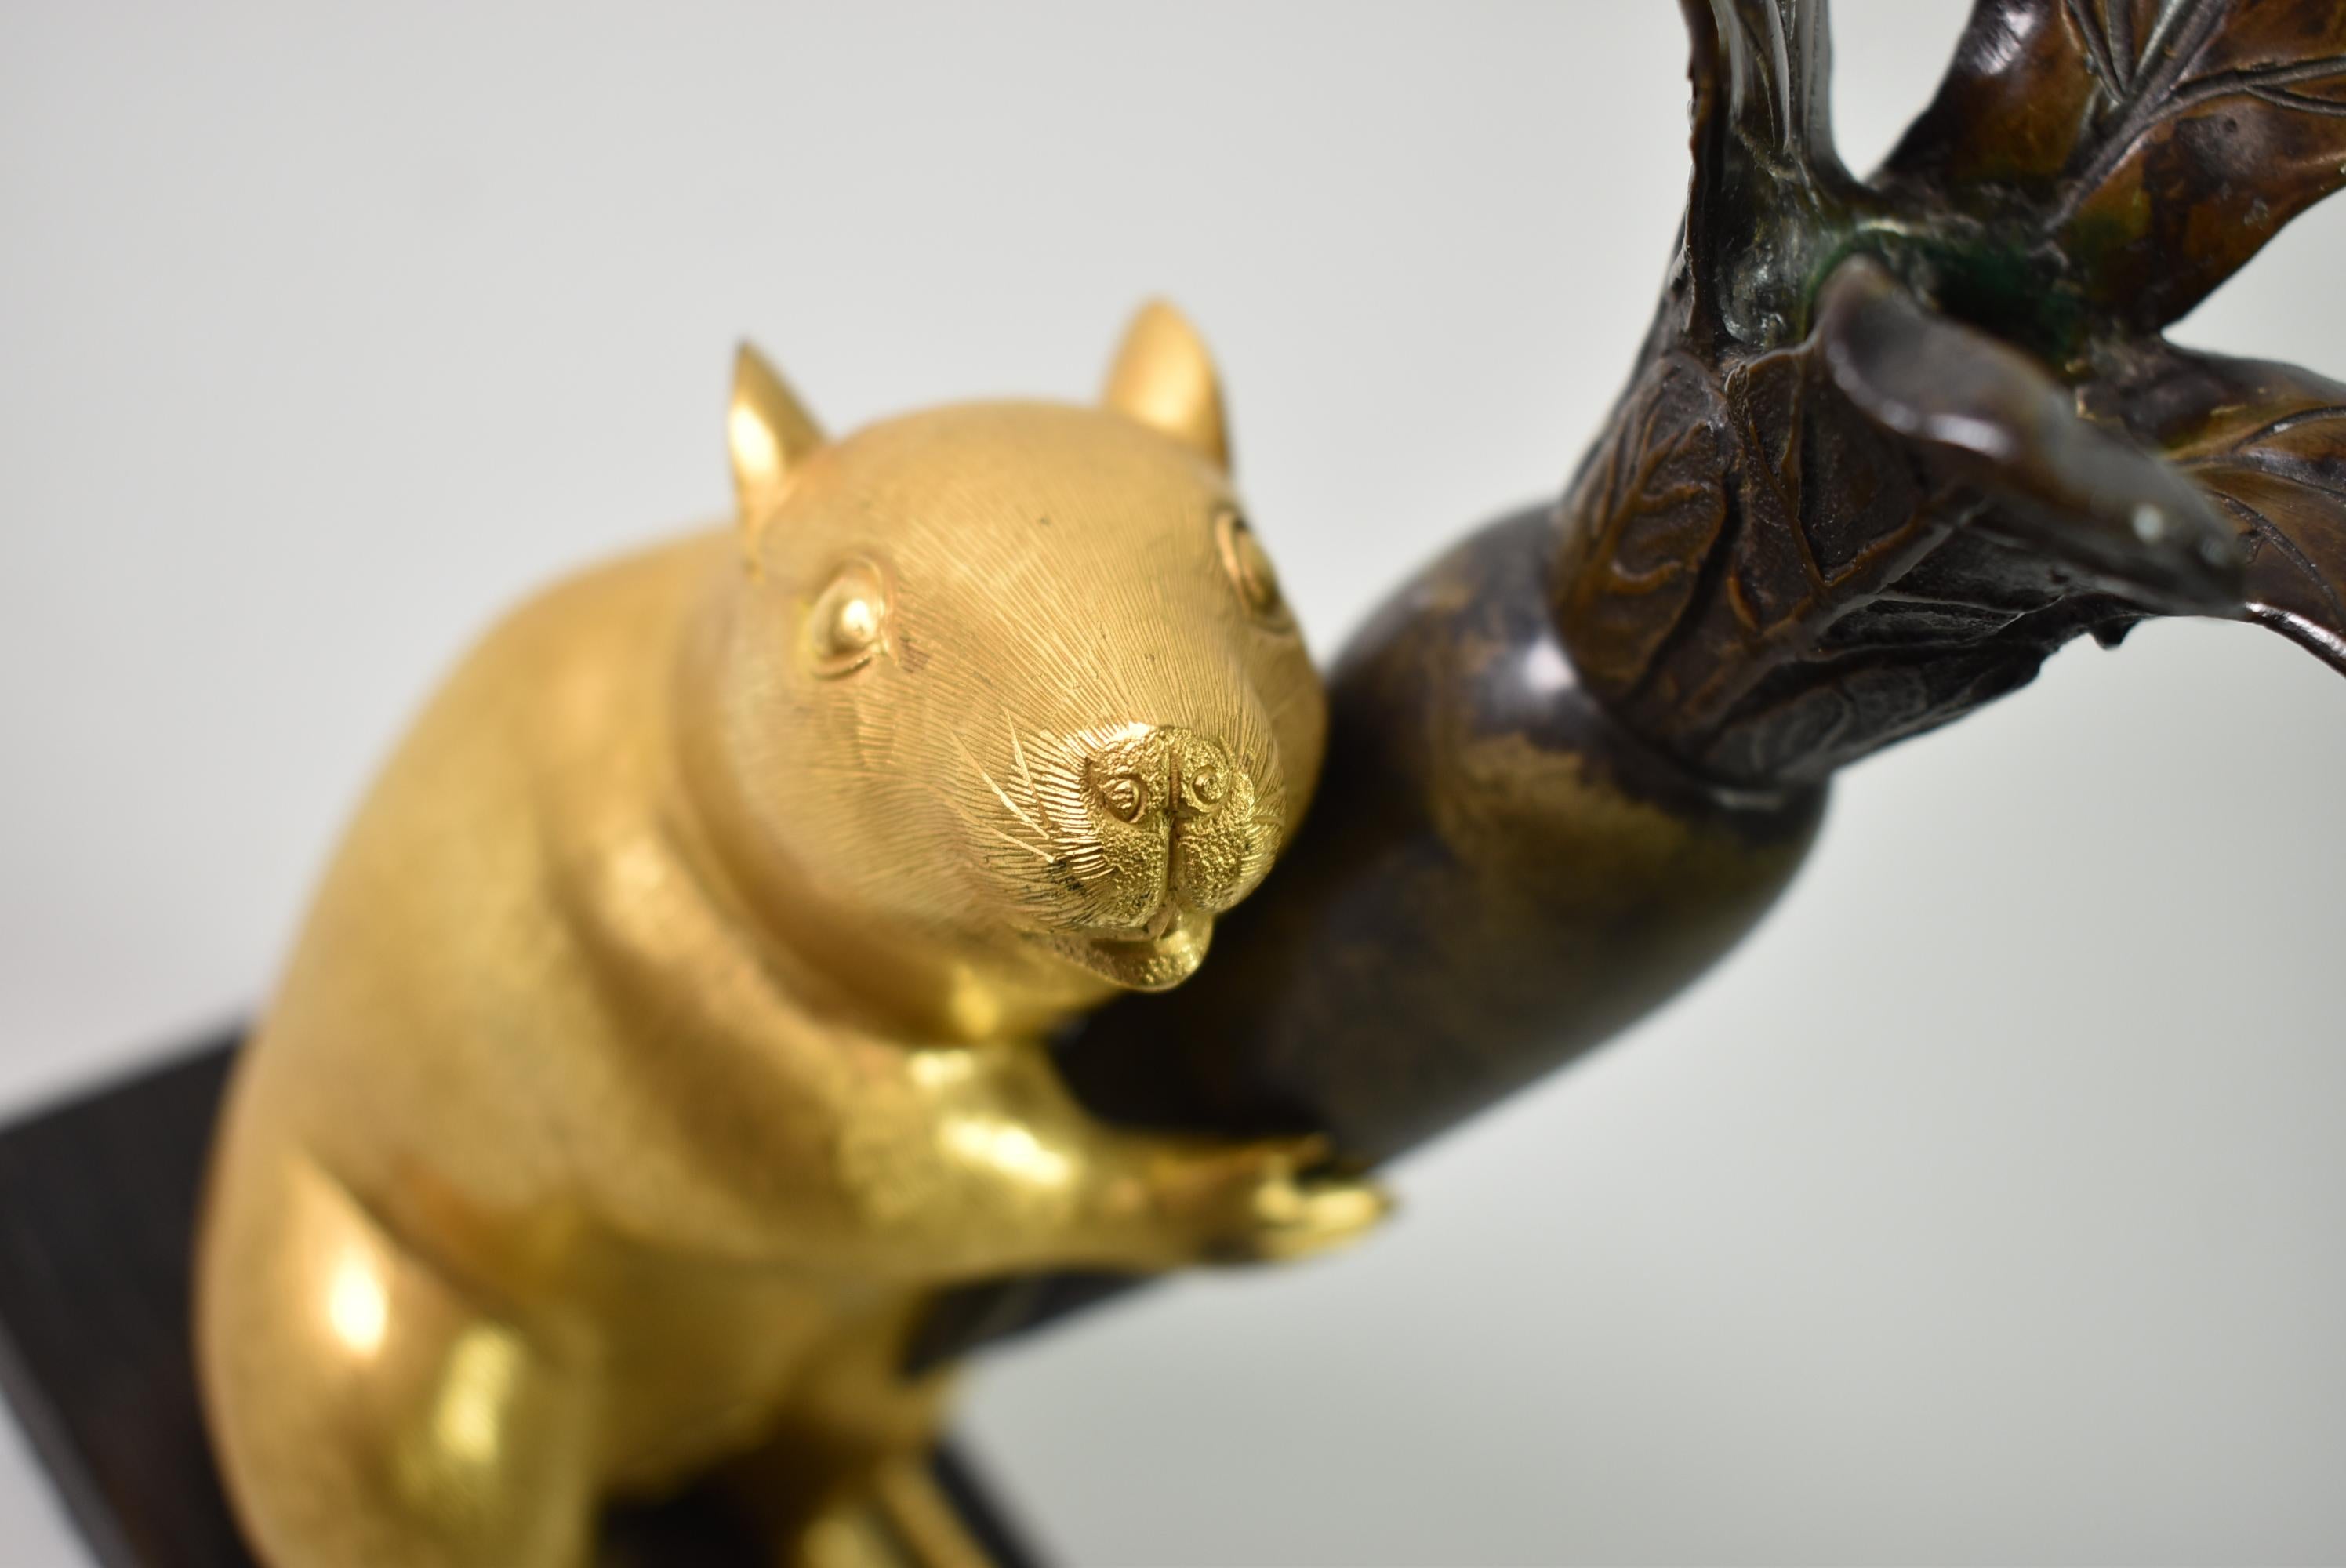 Japanischer Meiji-Bronze-Rattenleuchter aus der Meiji-Periode (1868-1912). Charmanter Kerzenhalter aus Bronze mit einer Ratte, die eine japanische Rübe hält, während die Blätter des Gemüses den Kerzenständer formen. Ratten sind in der japanischen